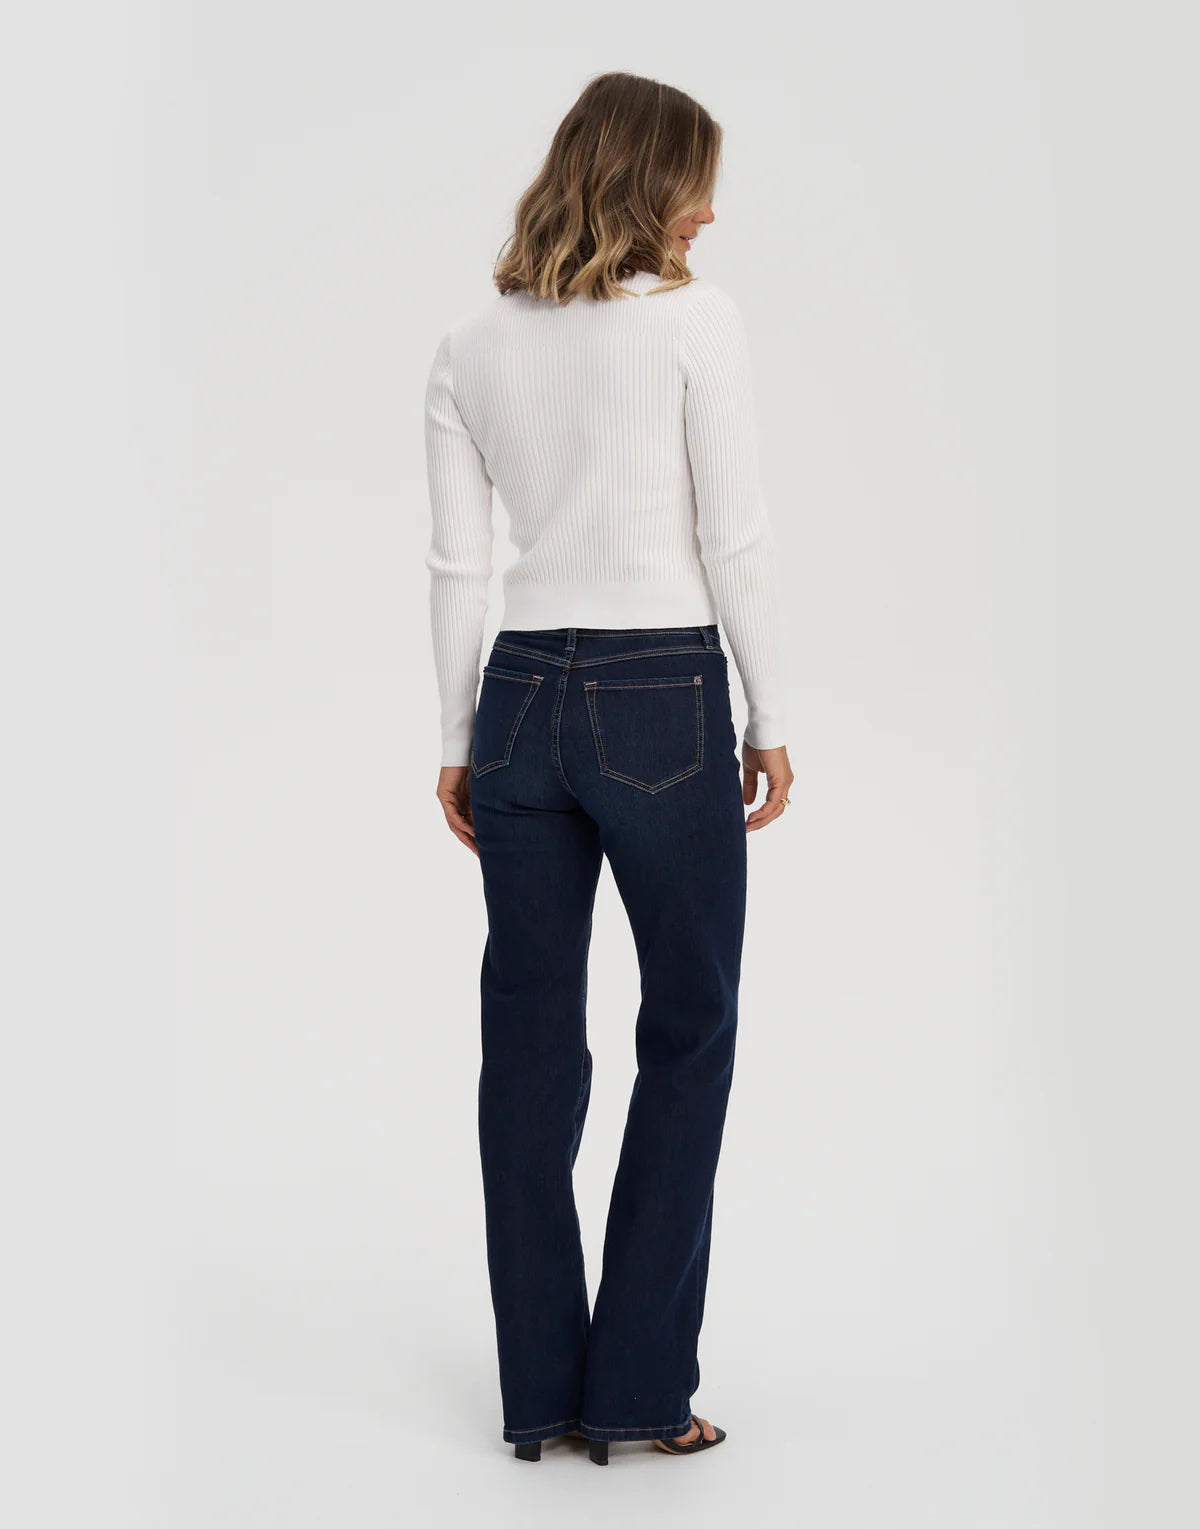 Jeans straight cut Chloe 34-blue DK Indie